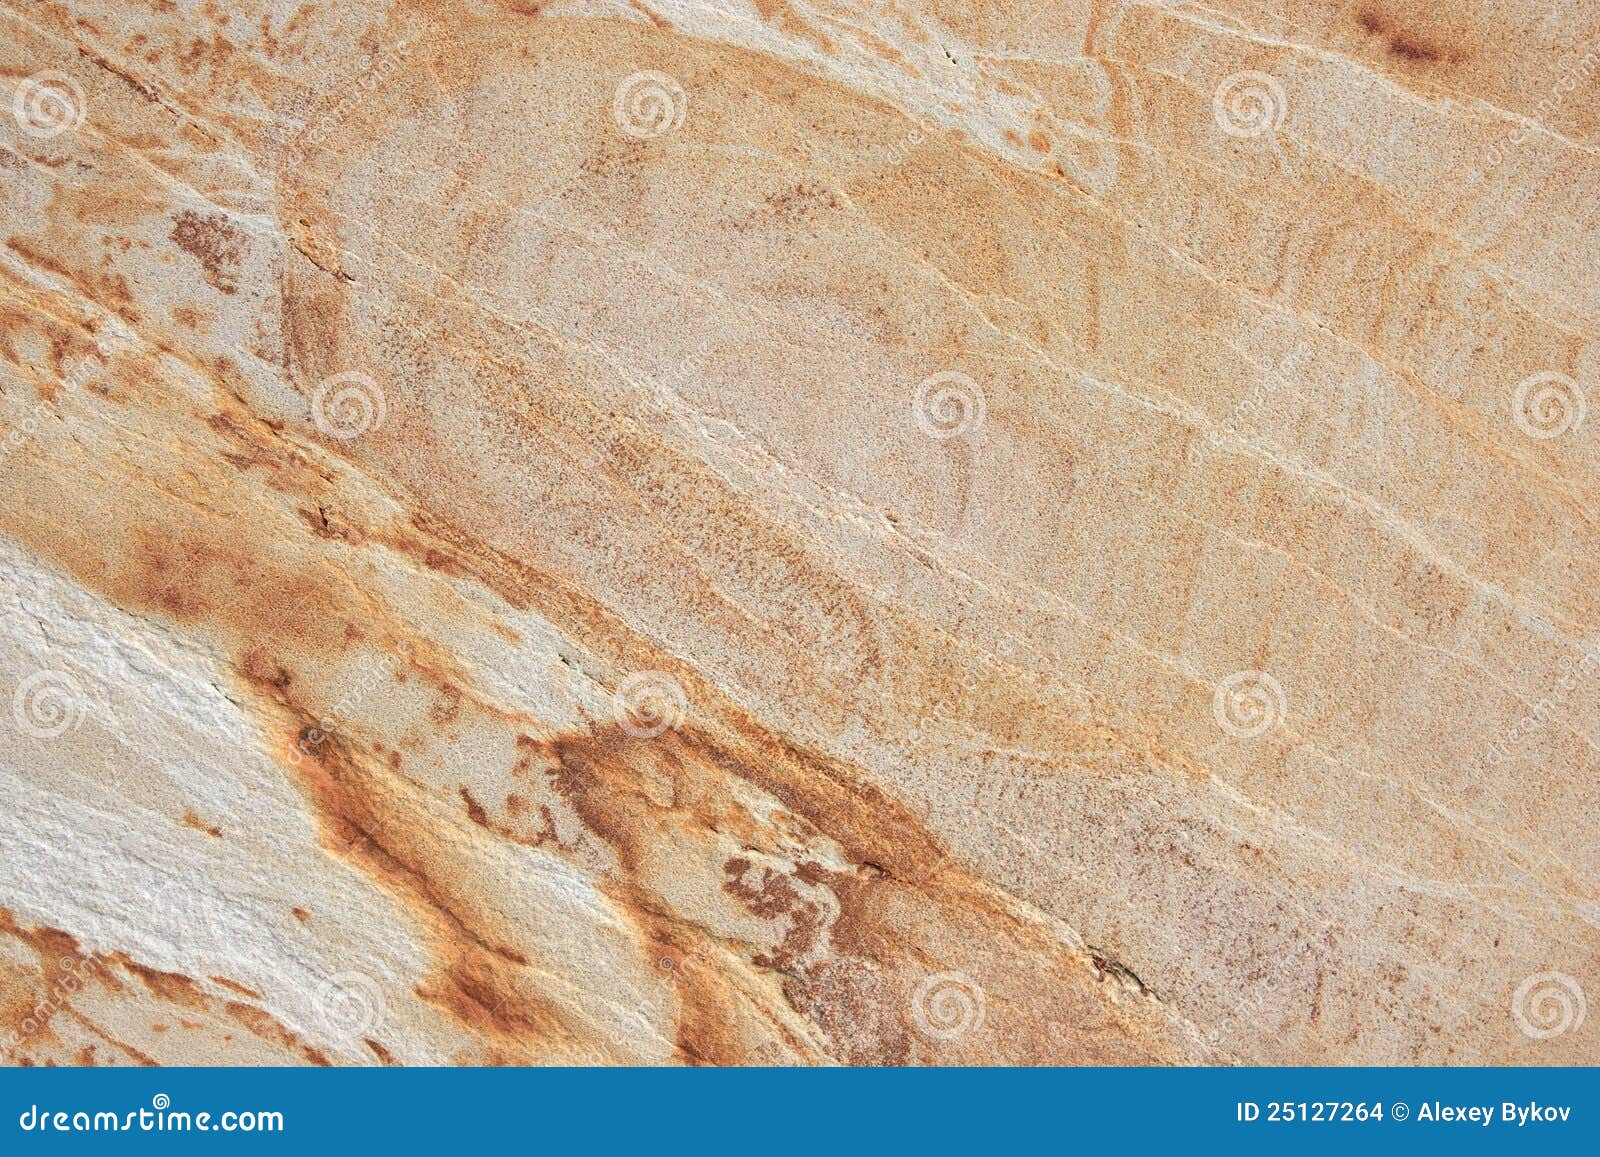 hoekpunt land segment Beige Graniet Met Natuurlijk Patroon. Stock Foto - Image of niemand, muur:  25127264